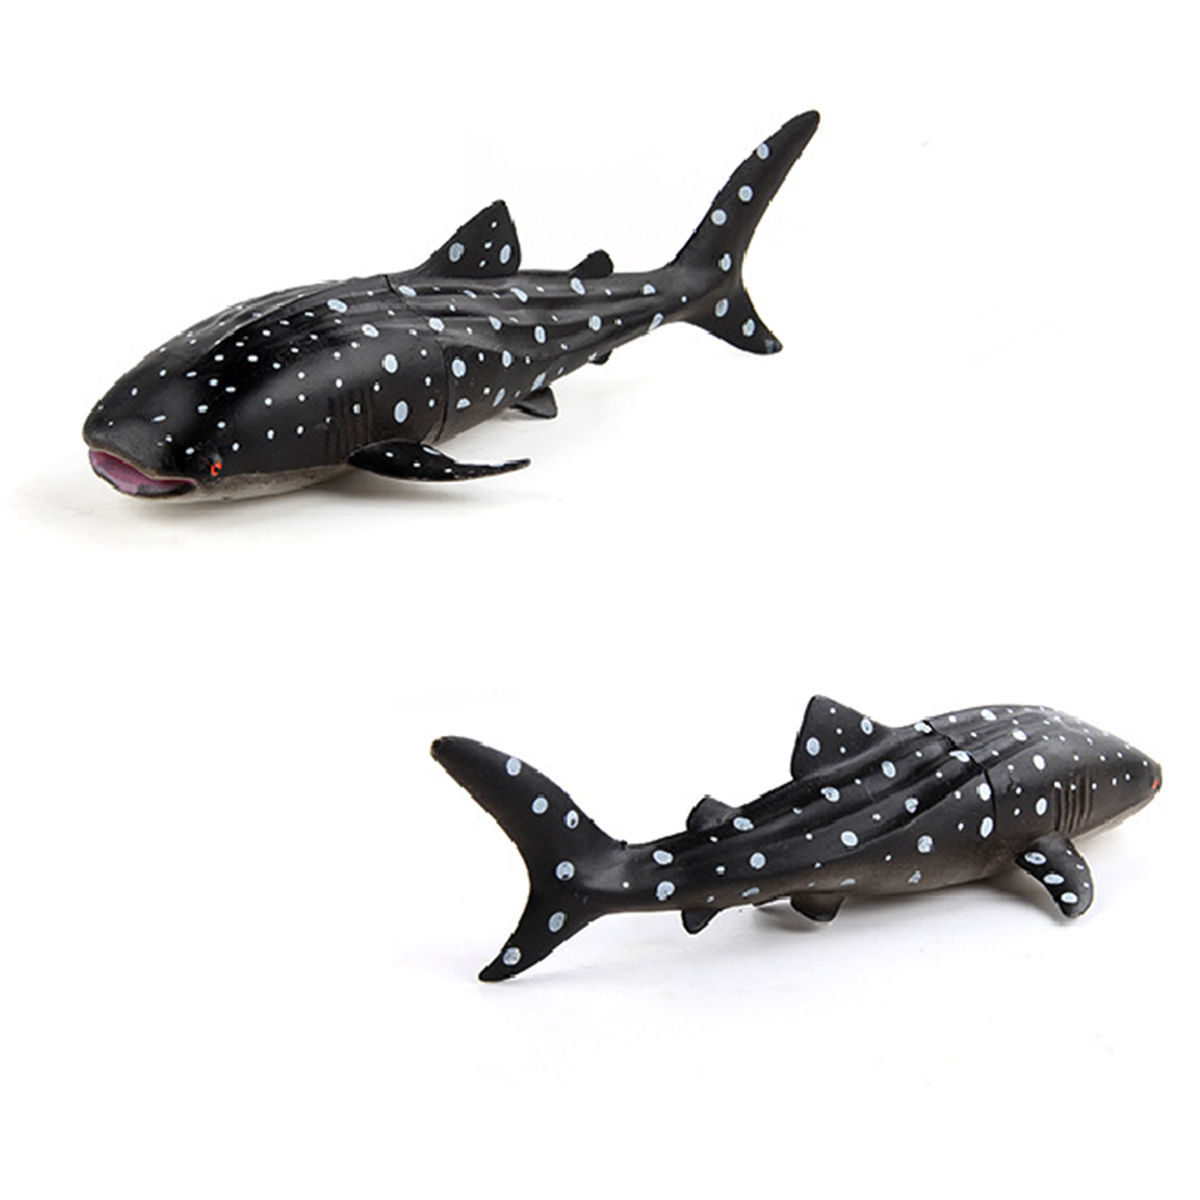 Mô hình Cá mập voi (cá nhám voi) 23x5 cm - Đồ chơi động vật biển New4all CMV1814 Rhincodon typus